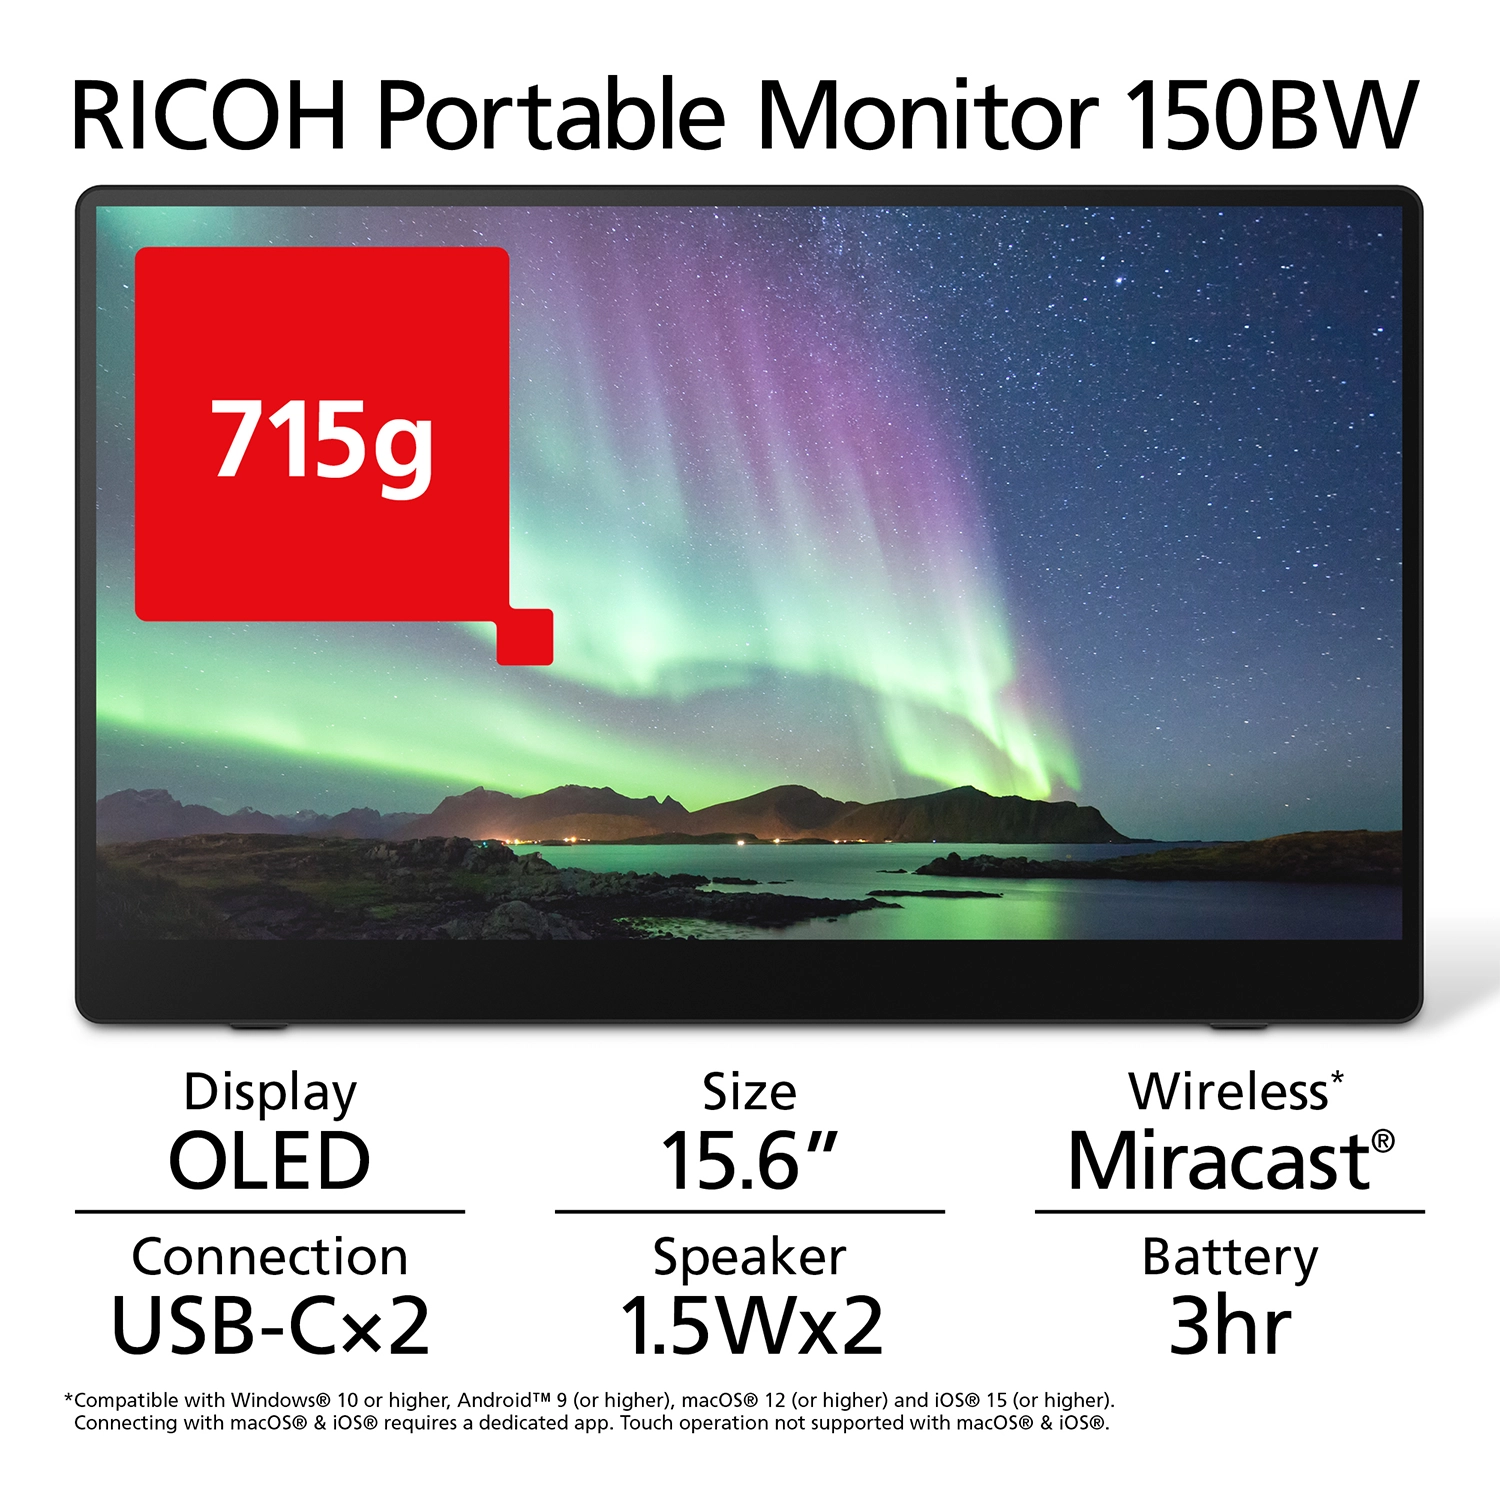 Moniteur portable RICOH 150BW